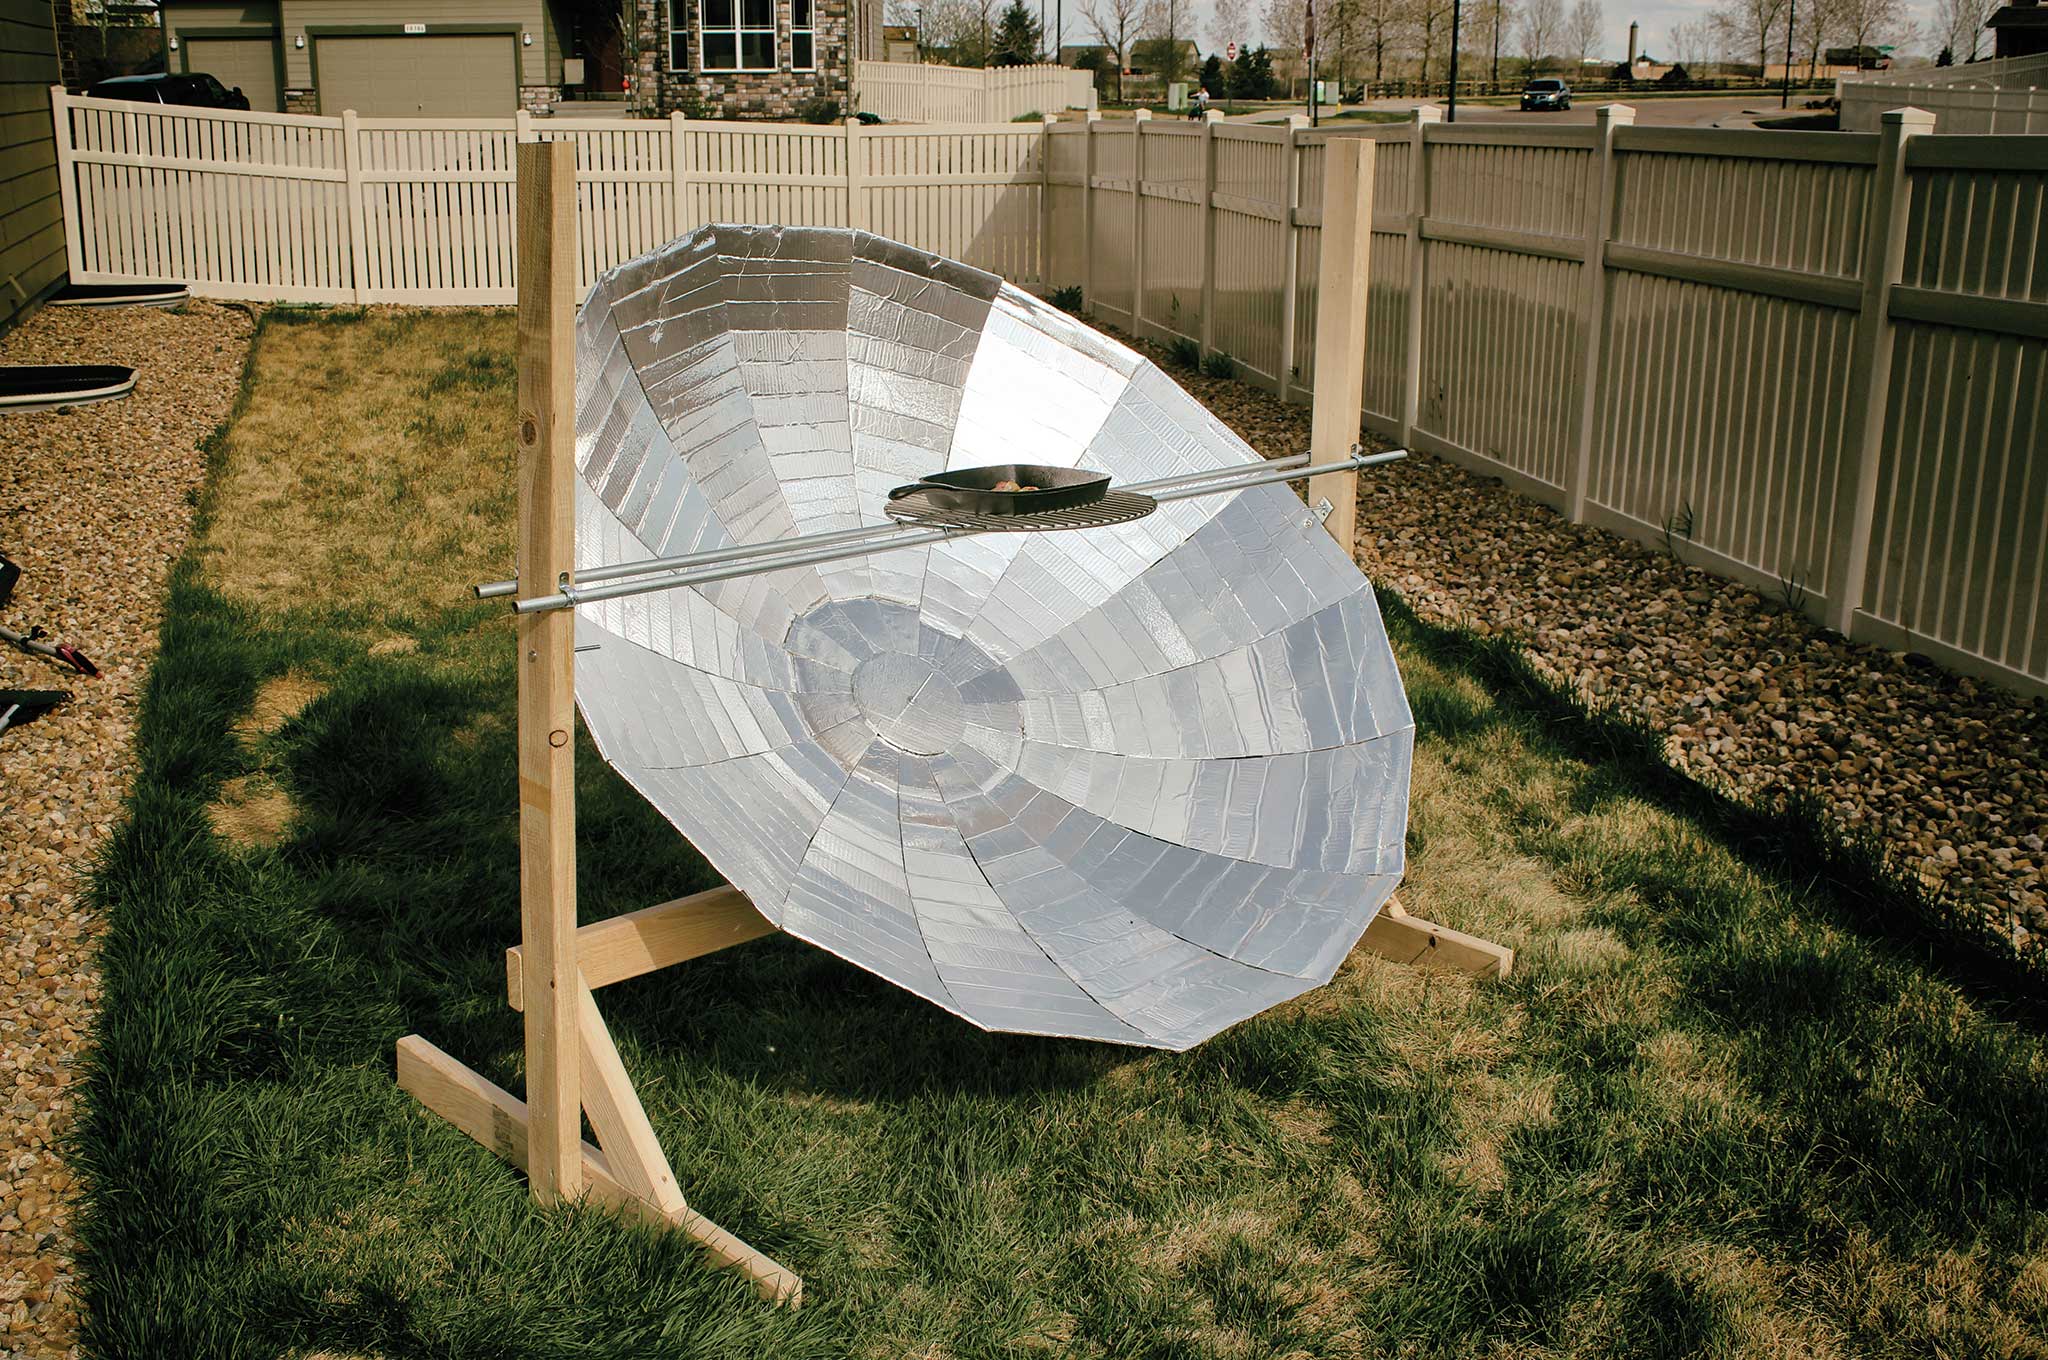 Building A Diy Parabolic Solar Cooker